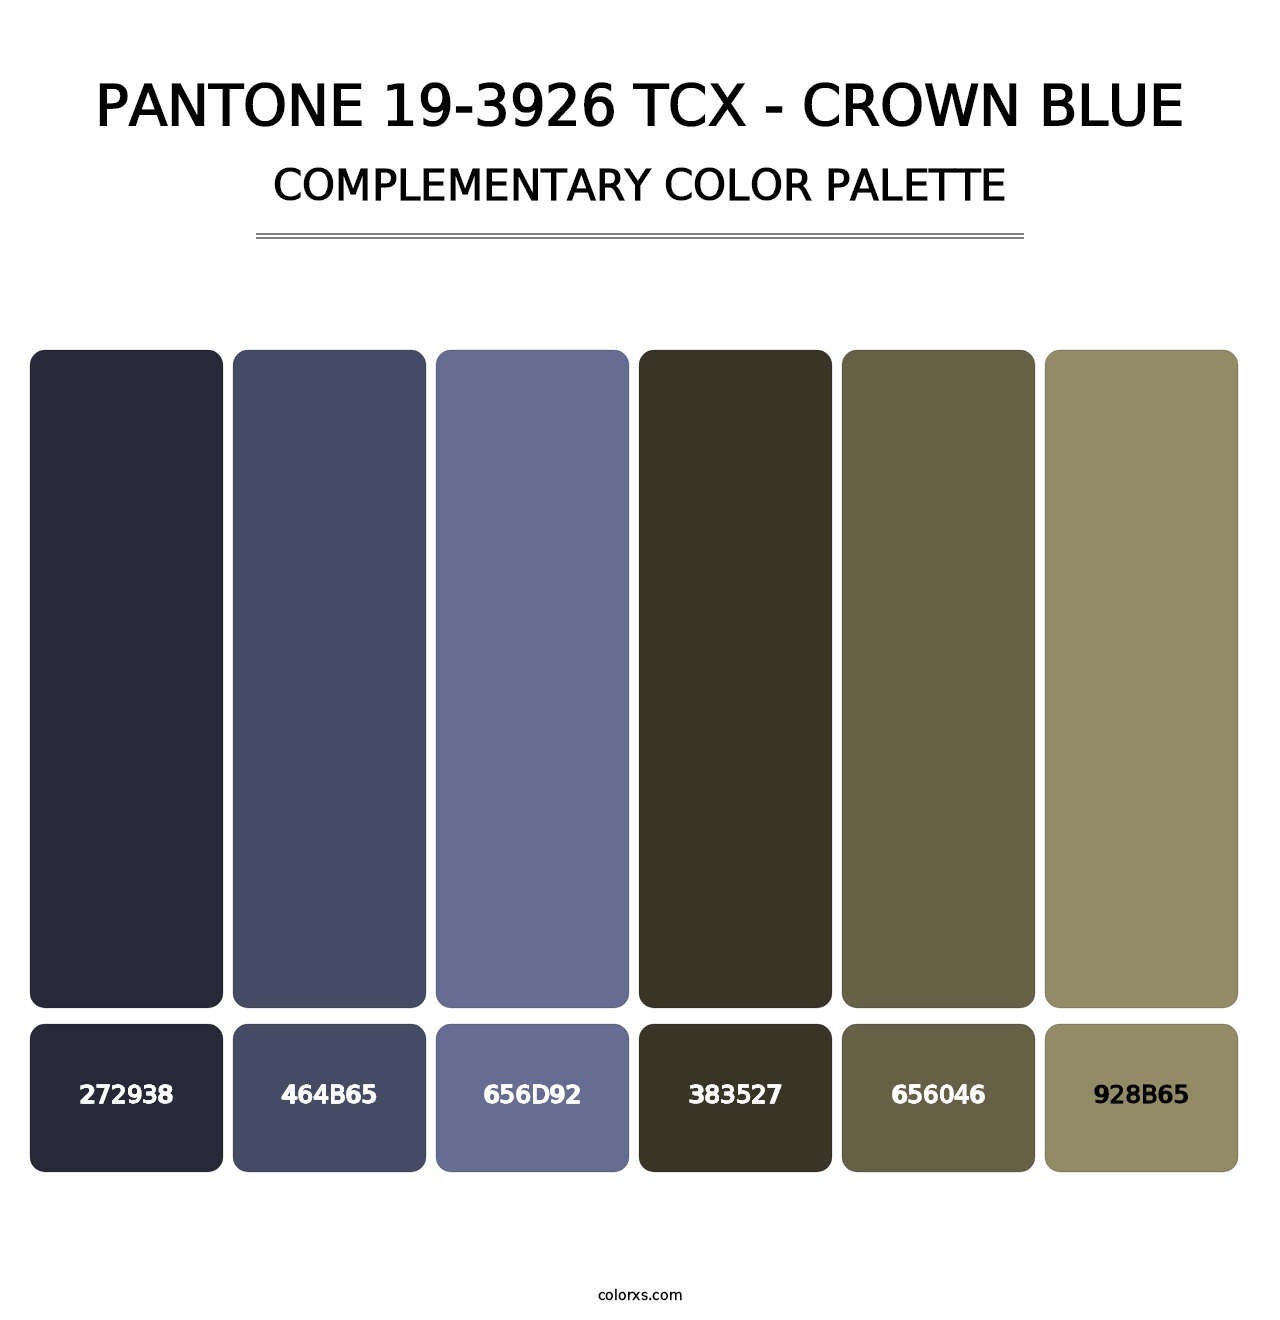 PANTONE 19-3926 TCX - Crown Blue - Complementary Color Palette